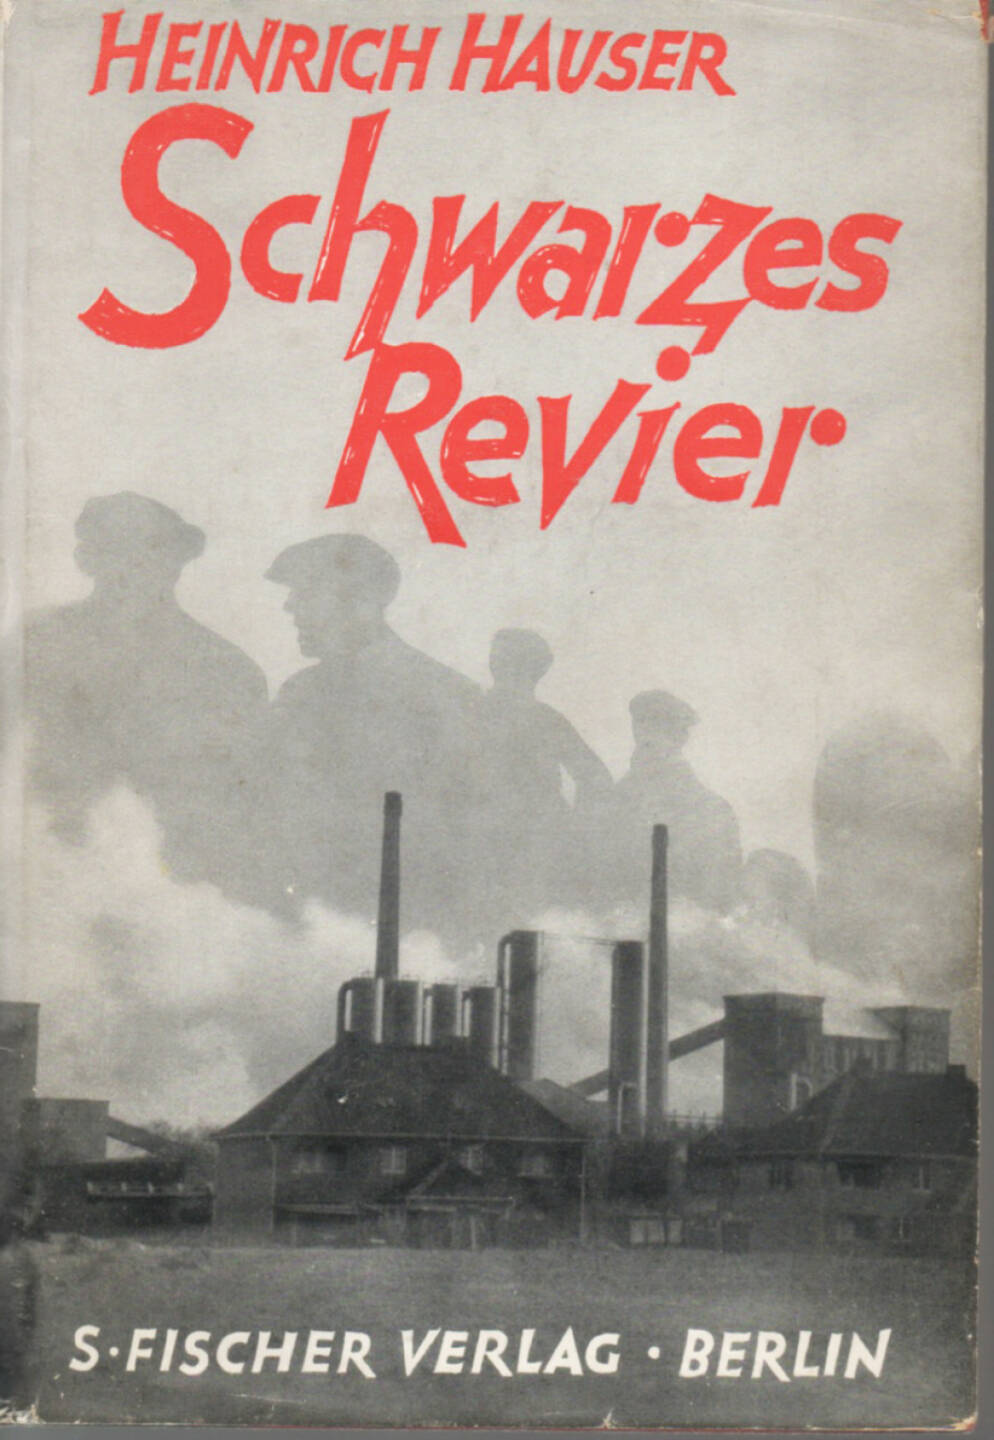 Heinrich Hauser - Schwarzes Revier, S. Fischer 1930, Cover - http://josefchladek.com/book/heinrich_hauser_-_schwarzes_revier